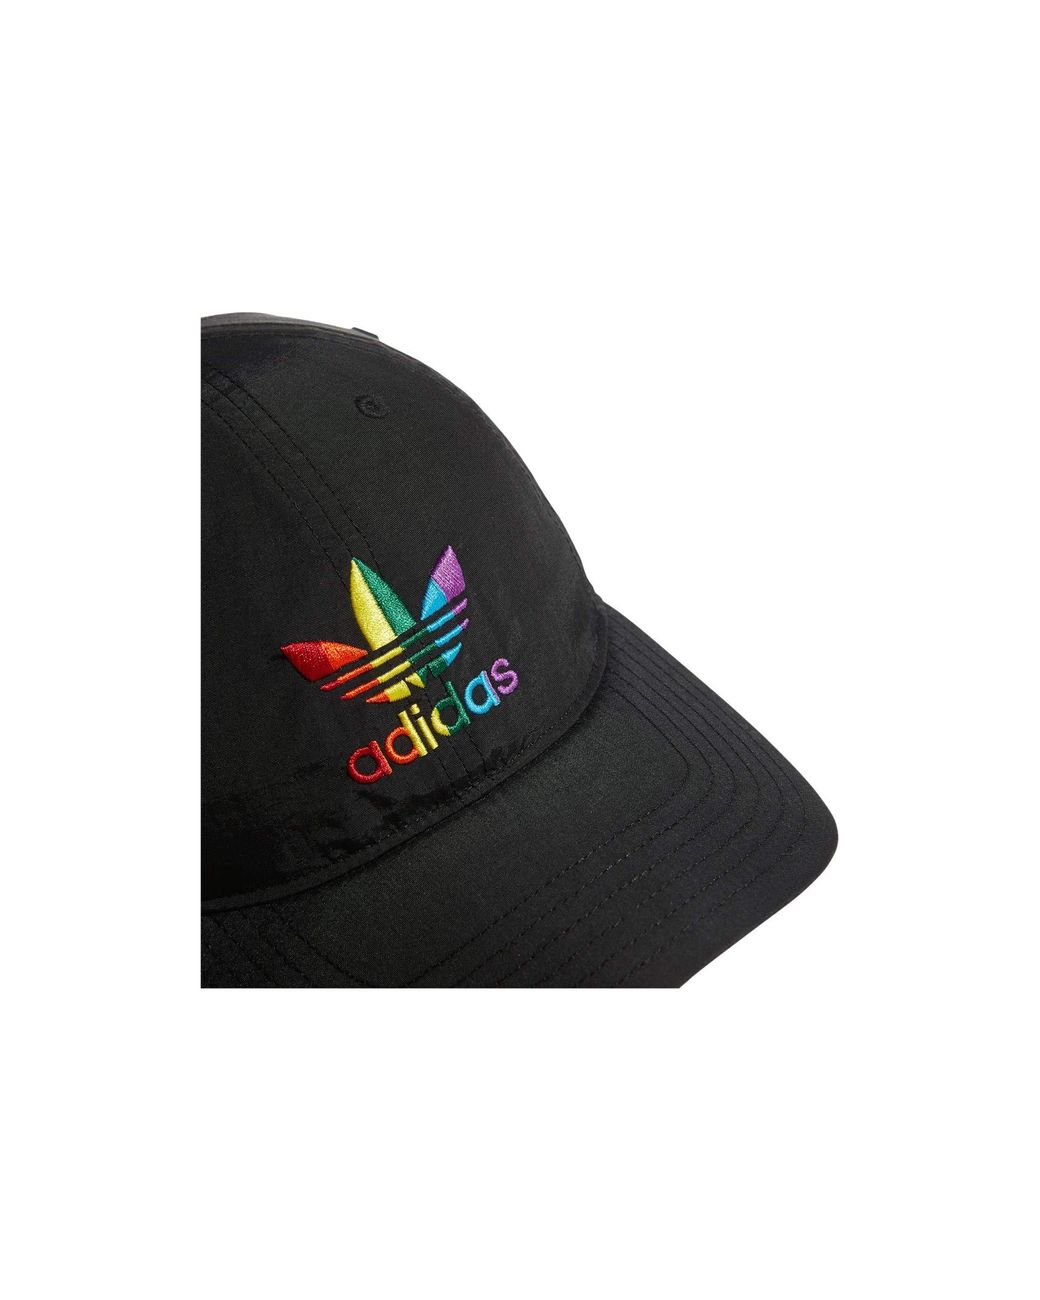 adidas Originals Relaxed Pride Cap Caps in Black | Lyst